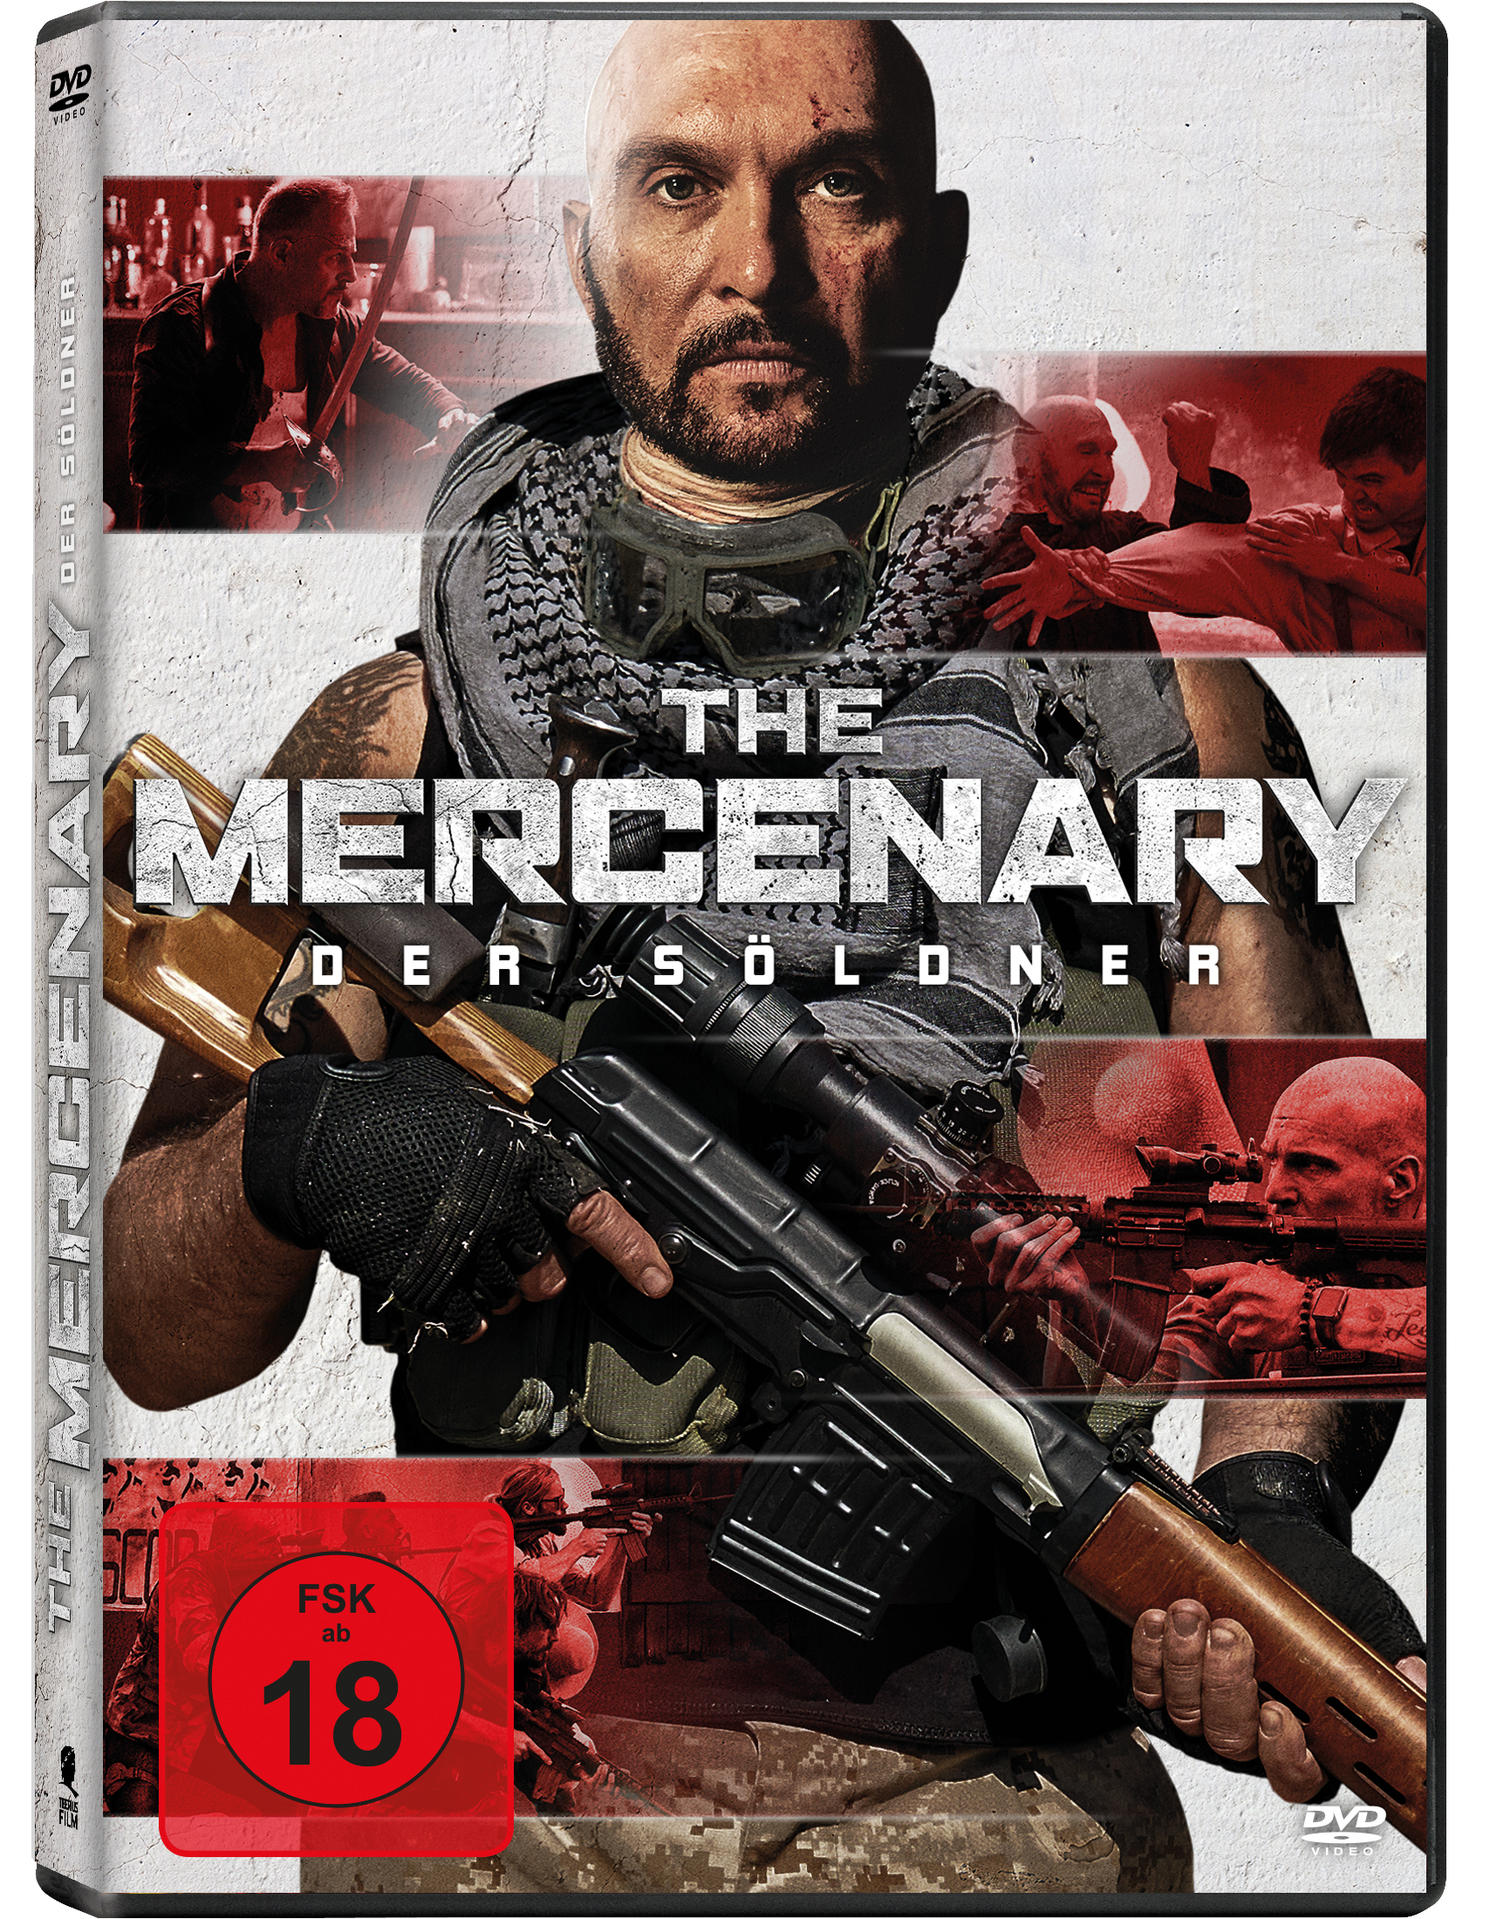 Söldner – The DVD Mercenary Der